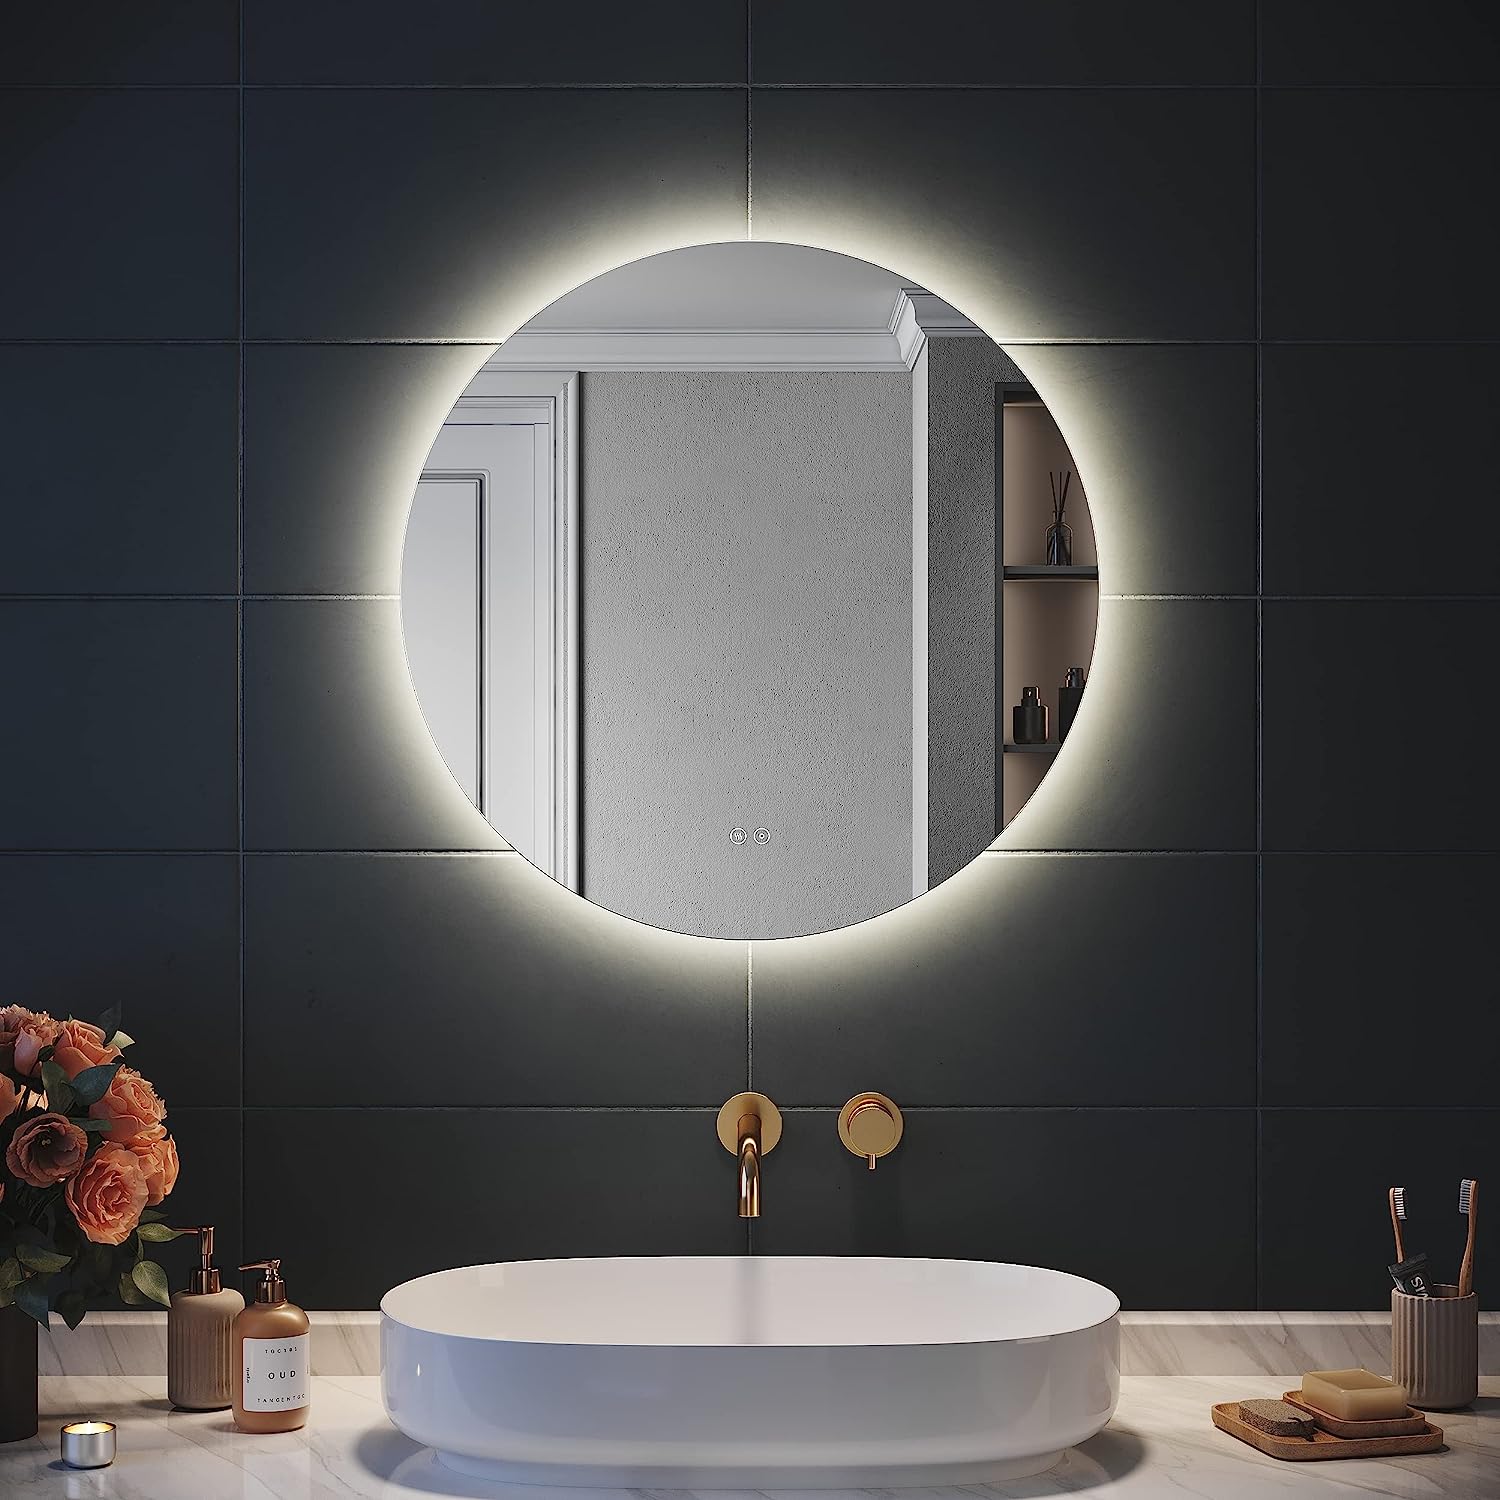 LED Miroir De Salle De Bain Rond,miroir salle bain avec éclairage